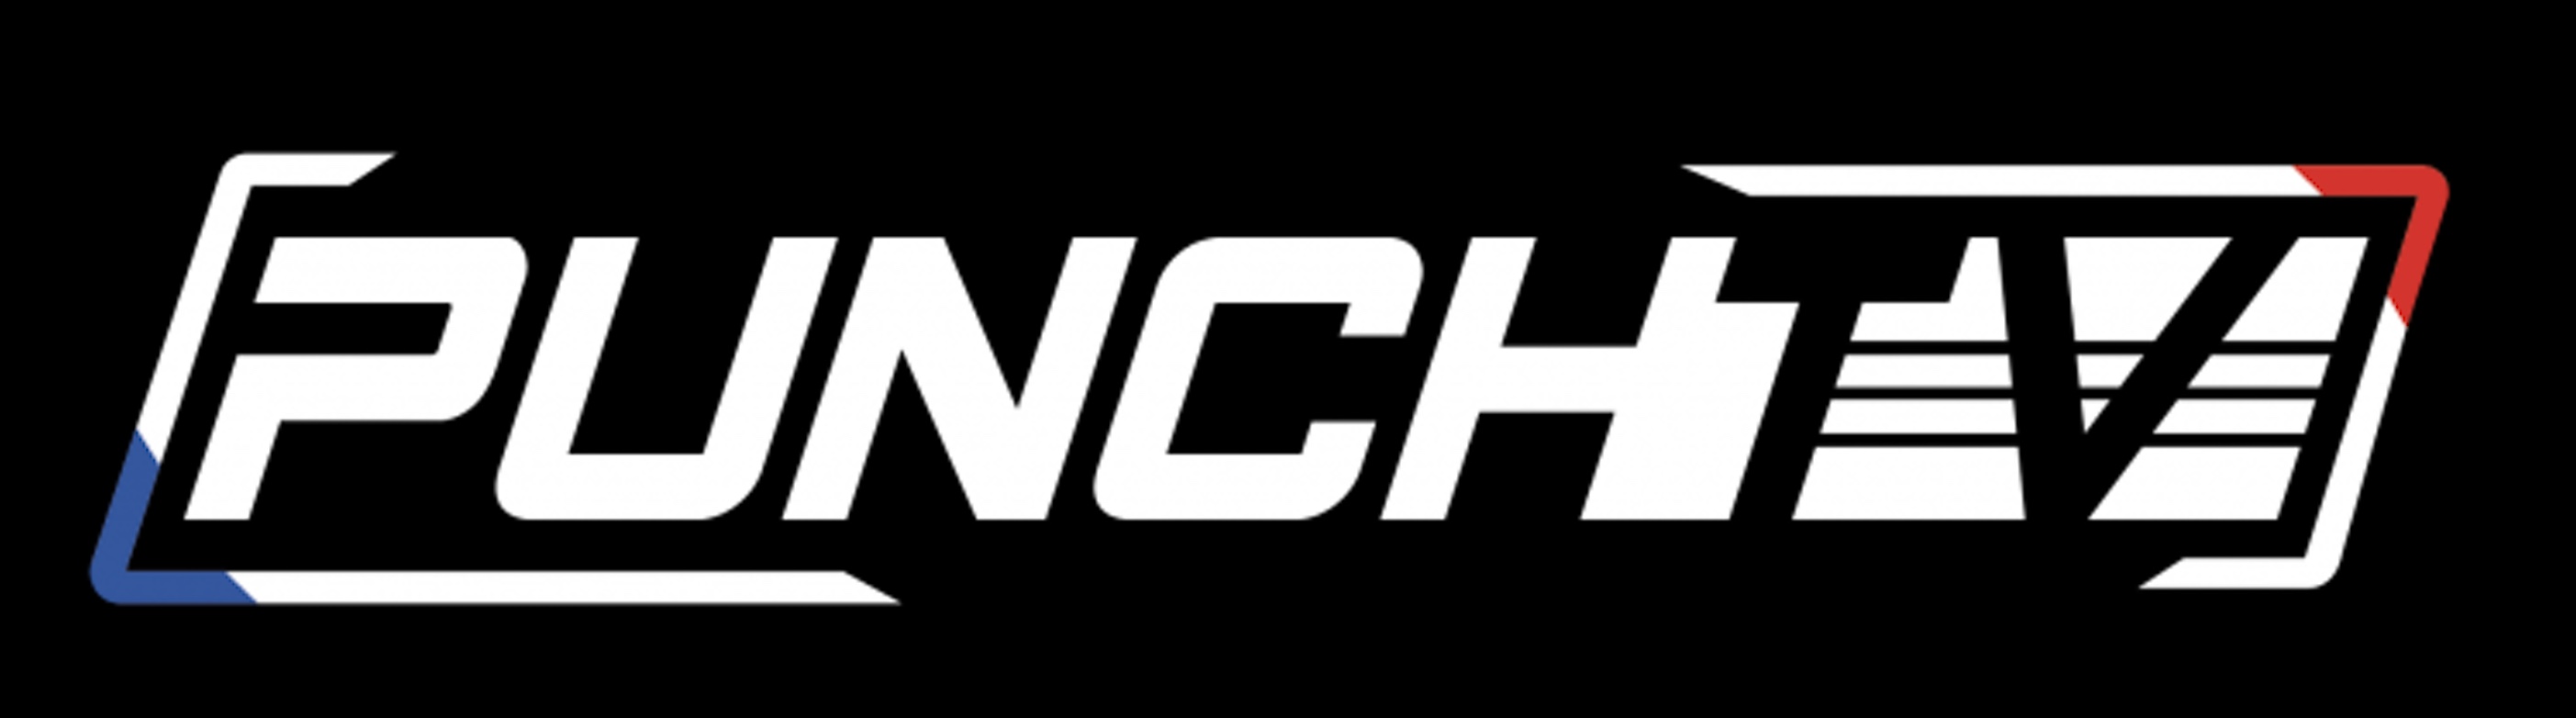 Canal+ Réunion : PUNCH TV la nouvelle chaîne de sports de combat !